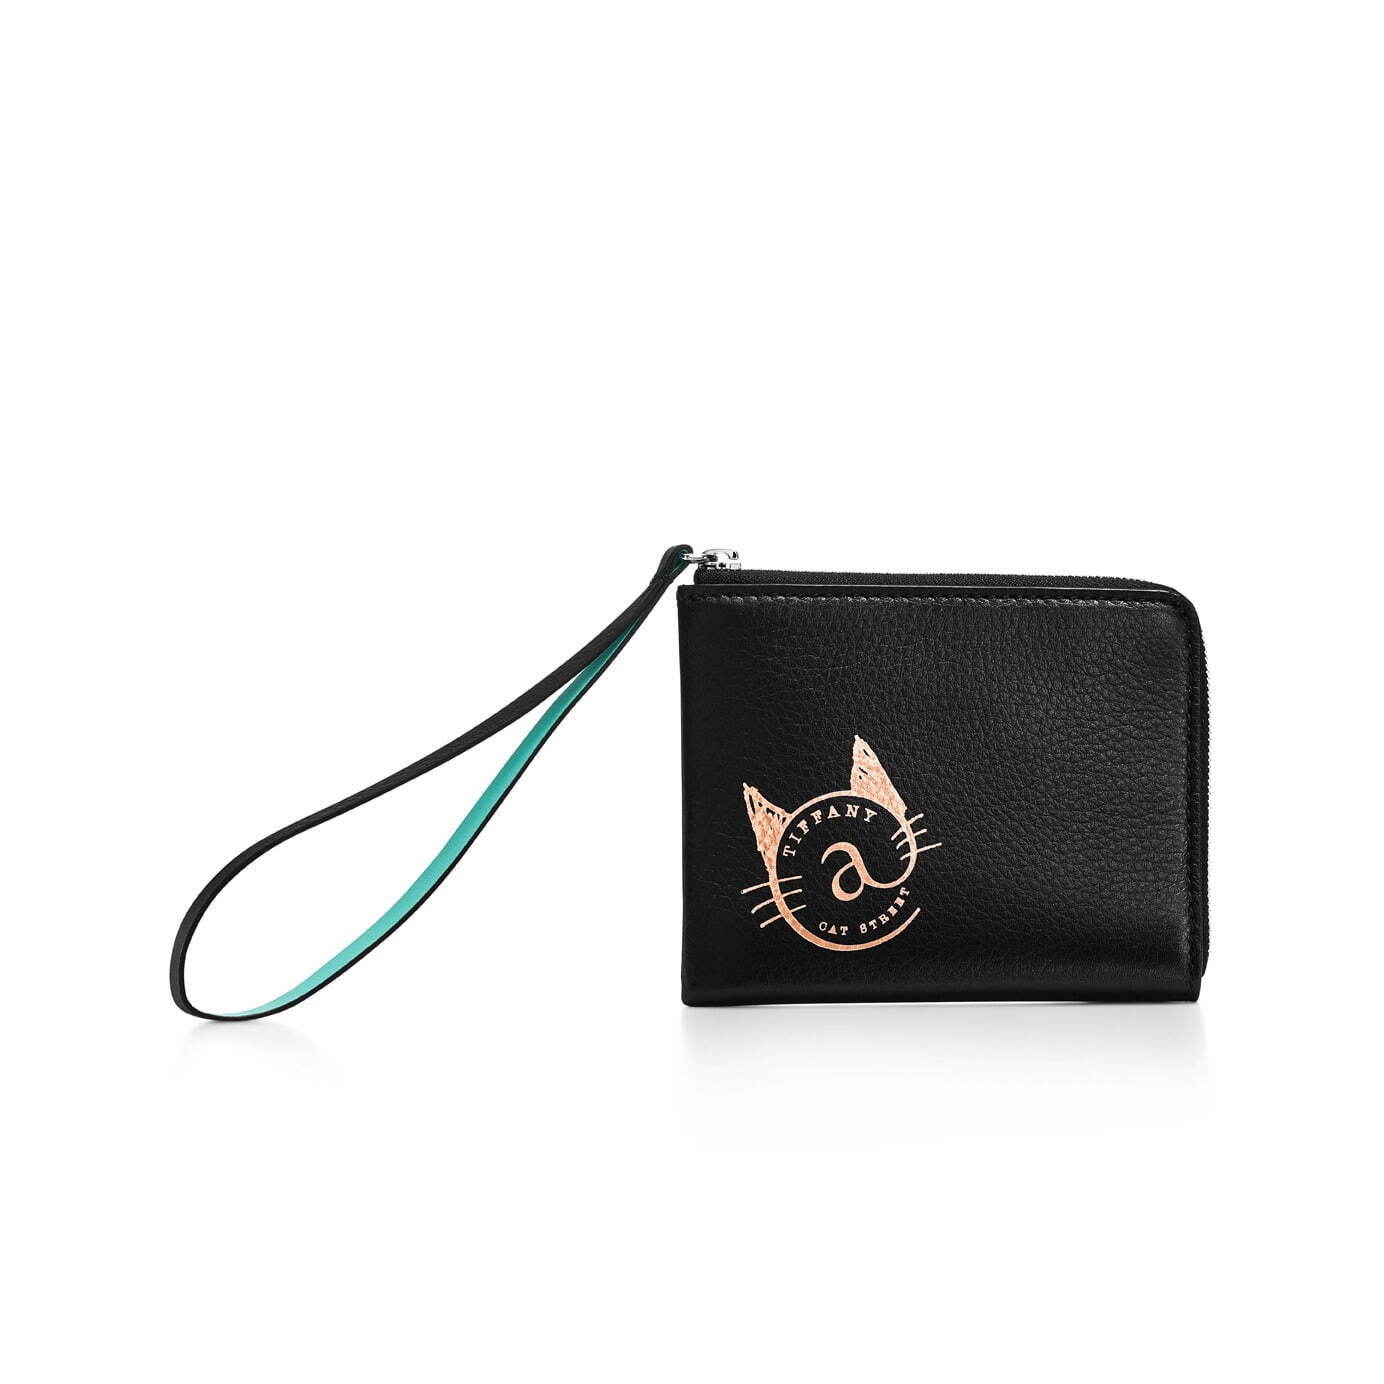 ティファニー「ネコモチーフ」の財布＆カードケースに新色・ブラック 